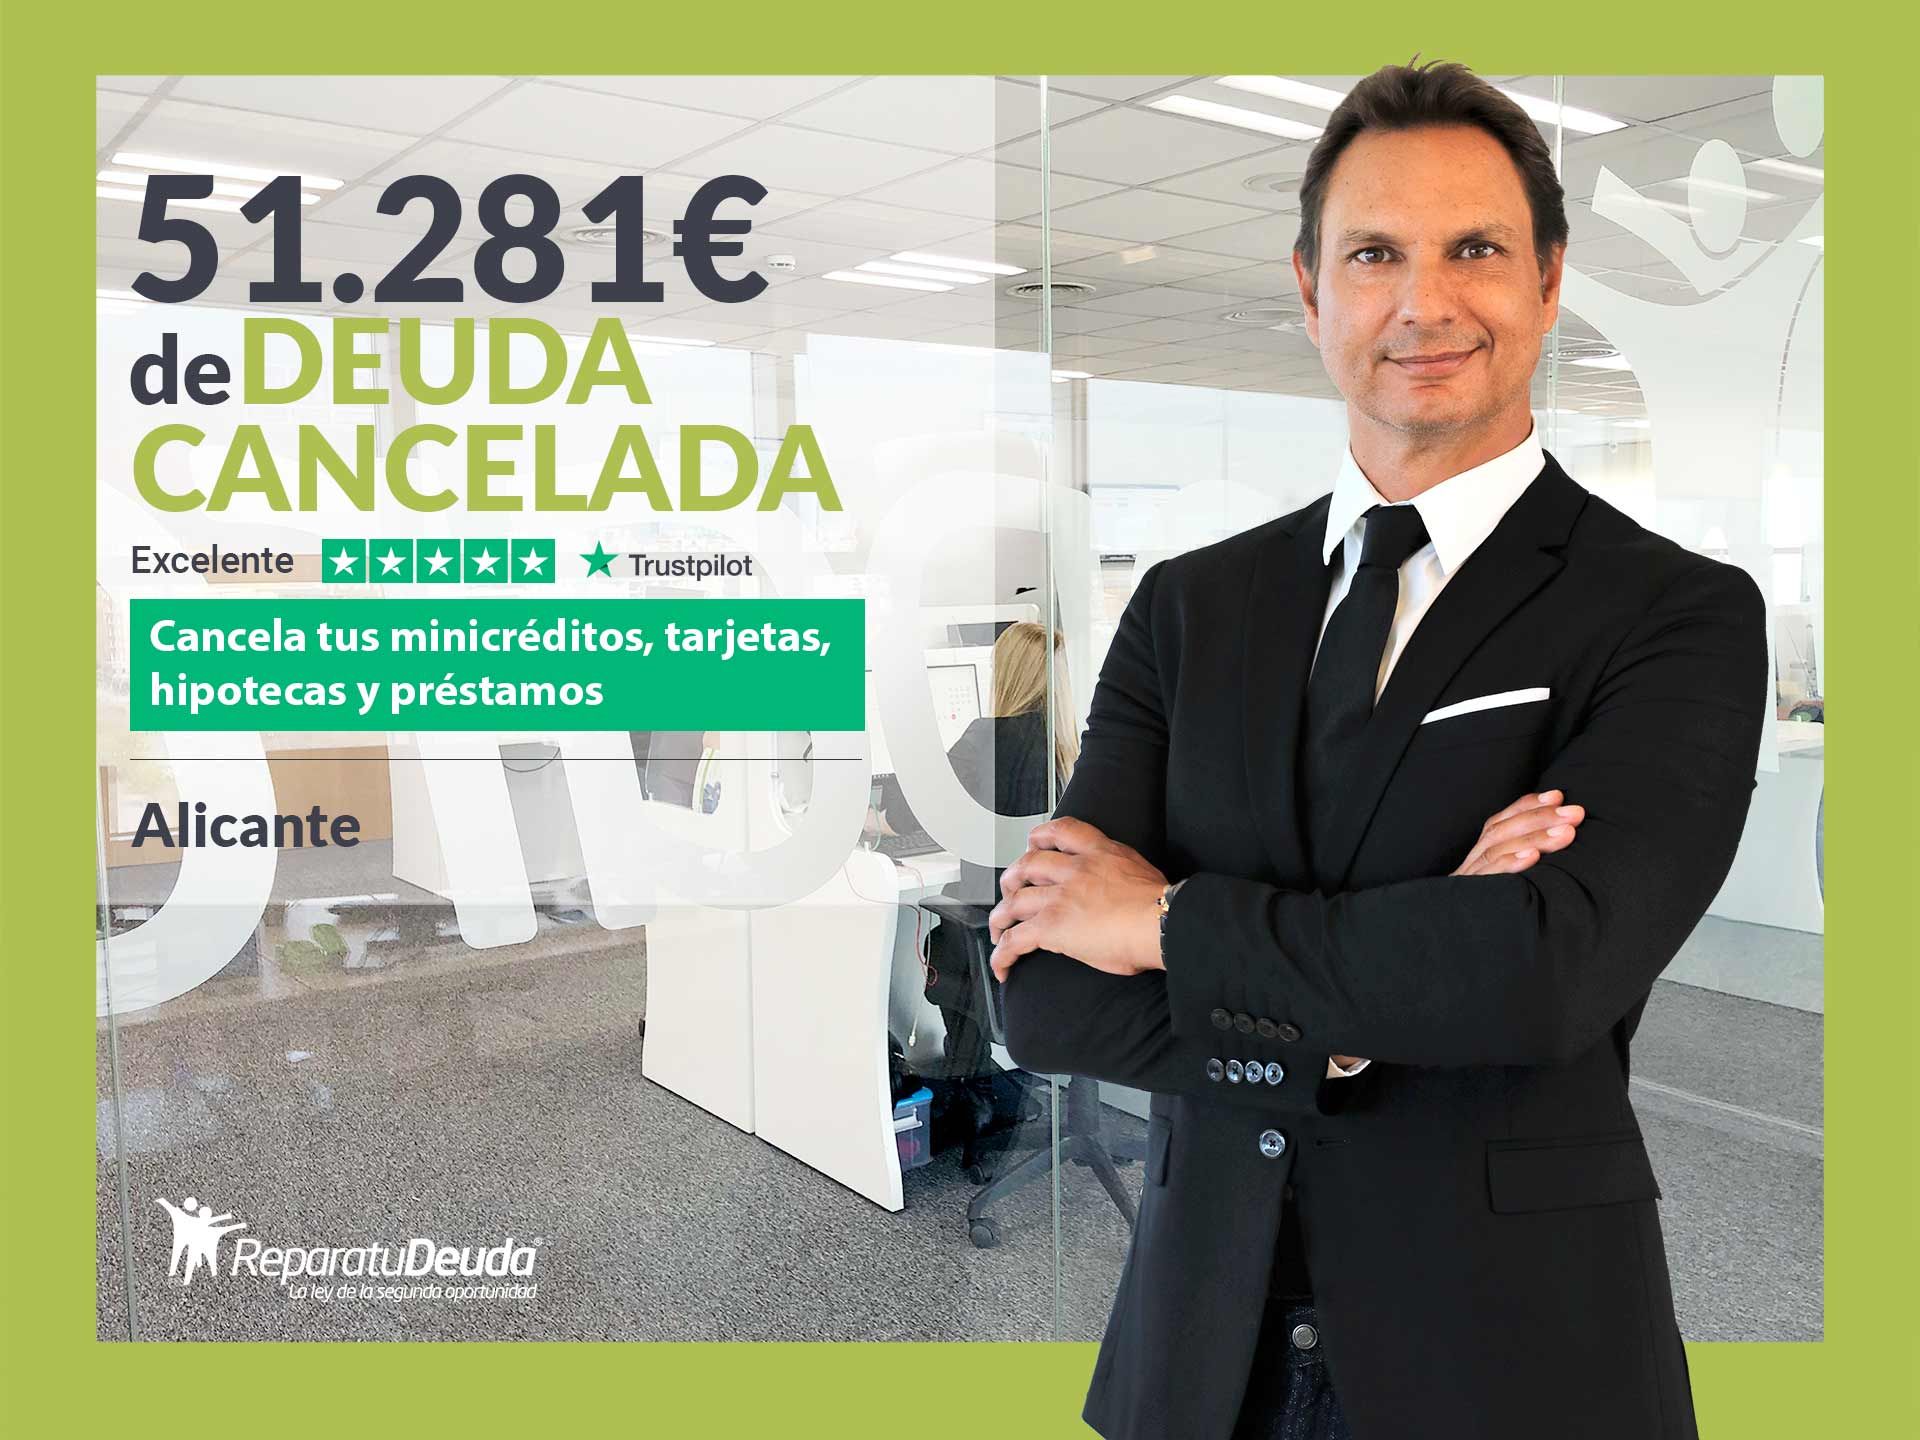 Fotografia Repara tu Deuda cancela 51.281 euros en Alicante (C.